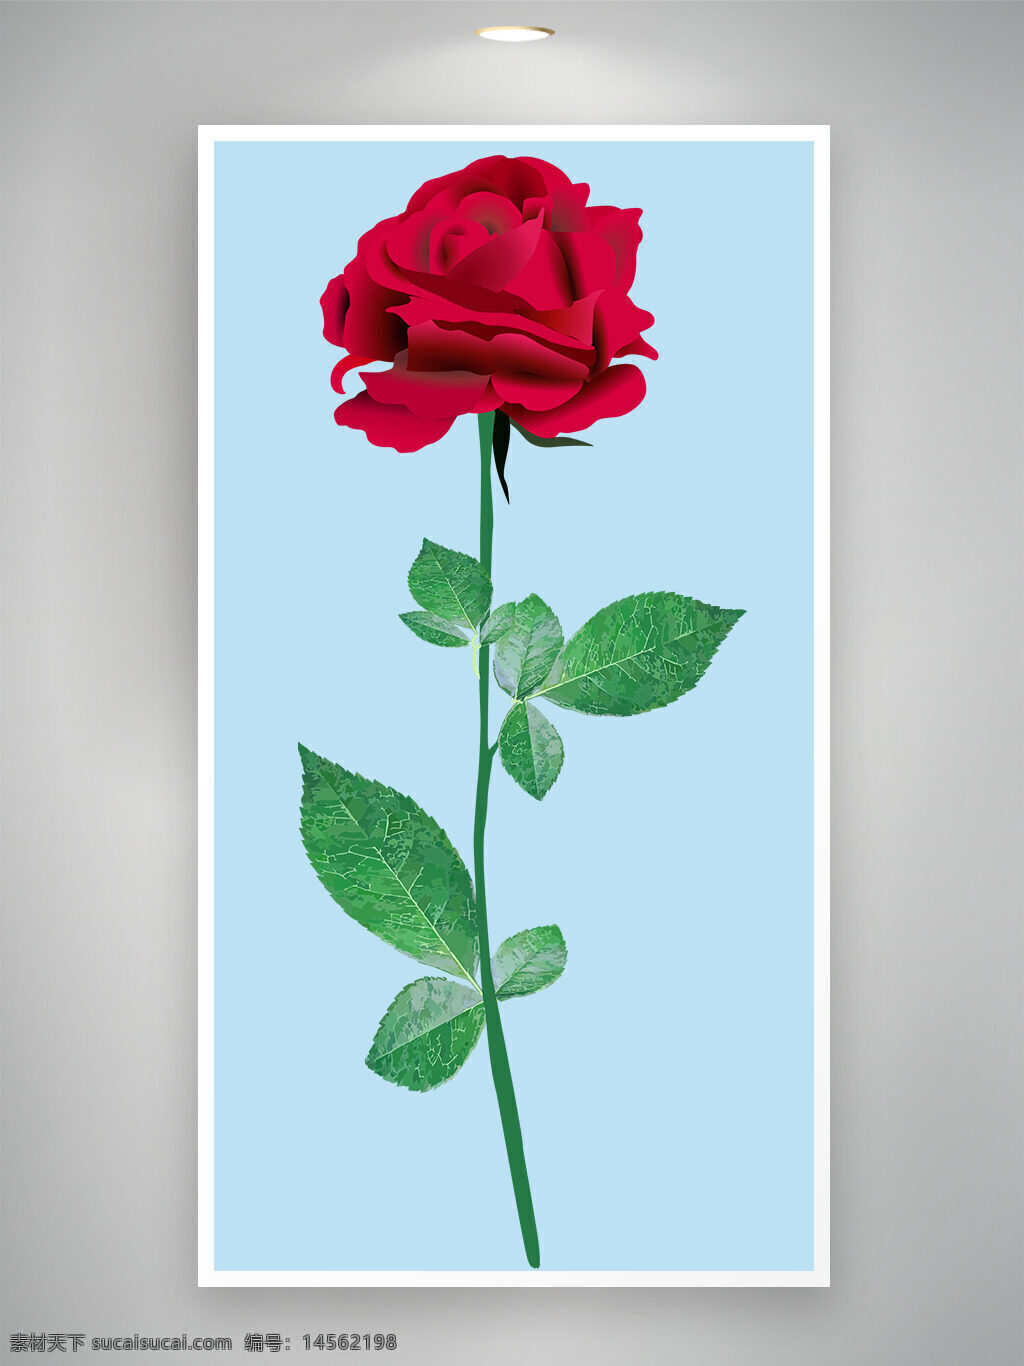 红玫瑰 玫瑰 爱情花 代表爱情